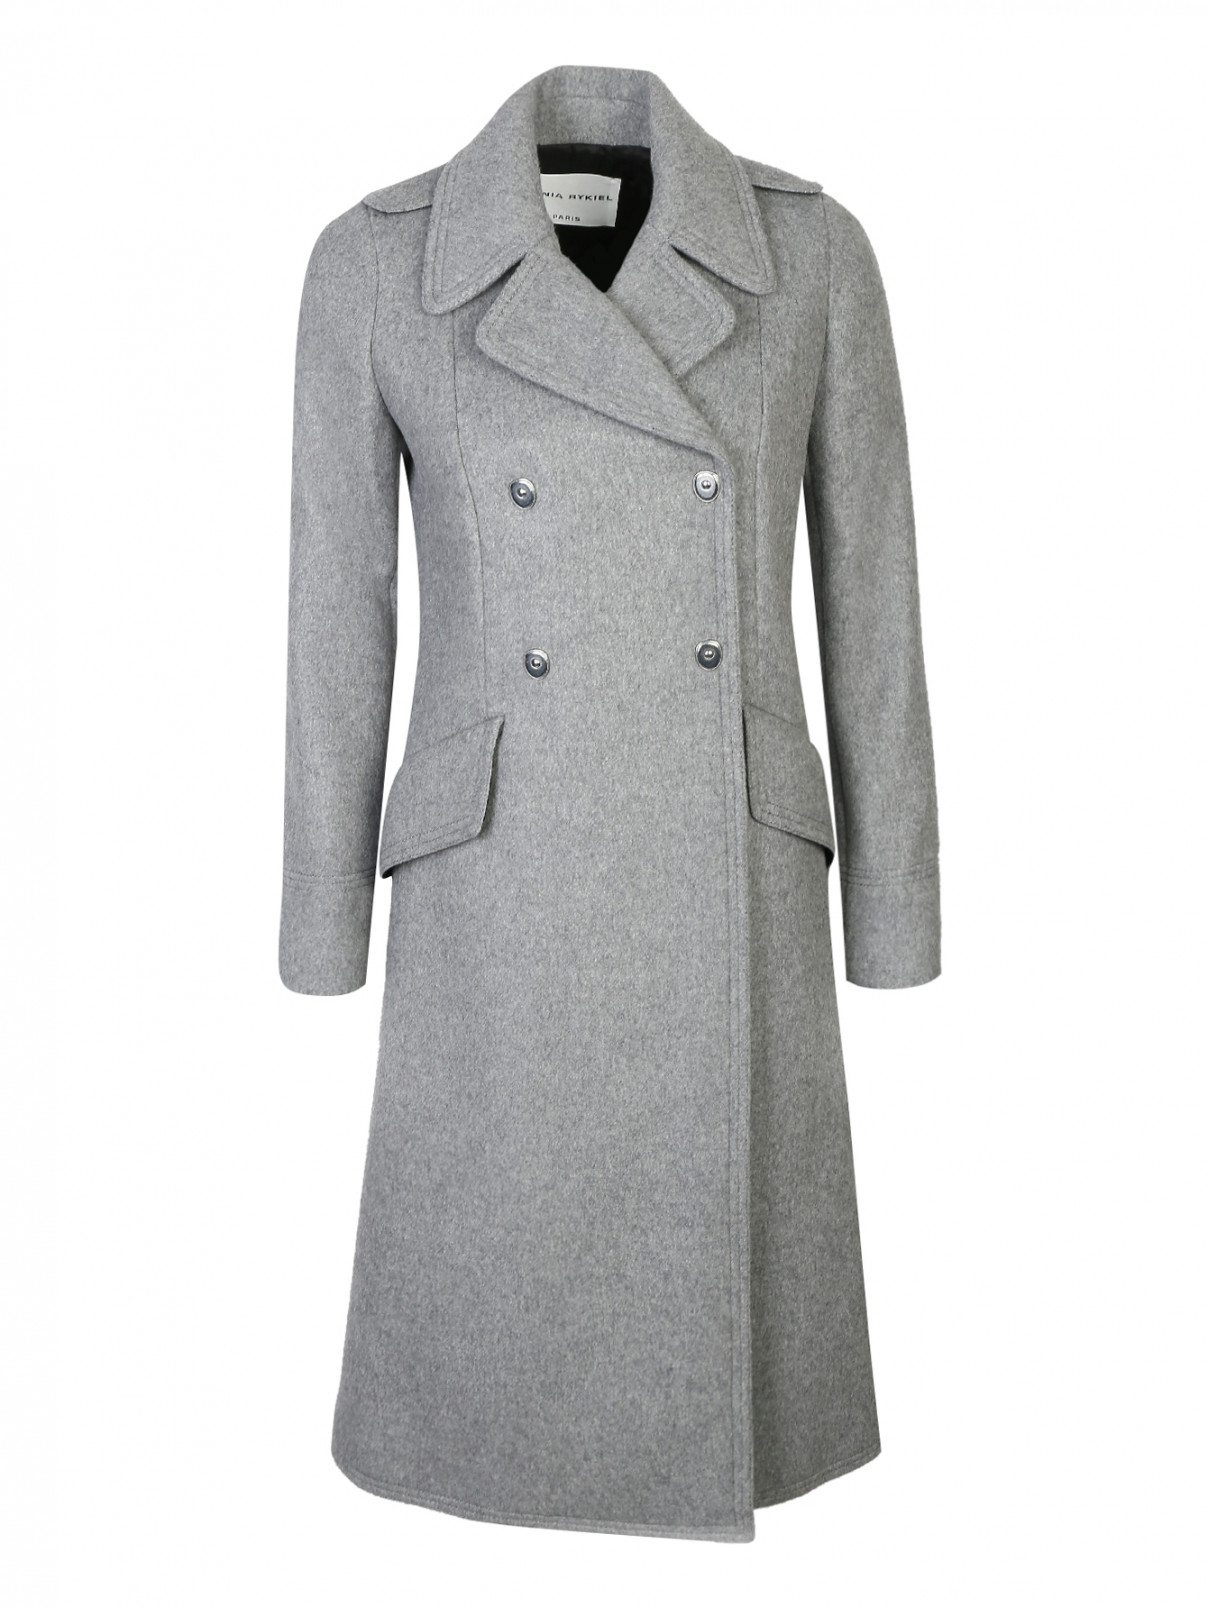 Пальто двубортное, из шерсти Sonia Rykiel  –  Общий вид  – Цвет:  Серый